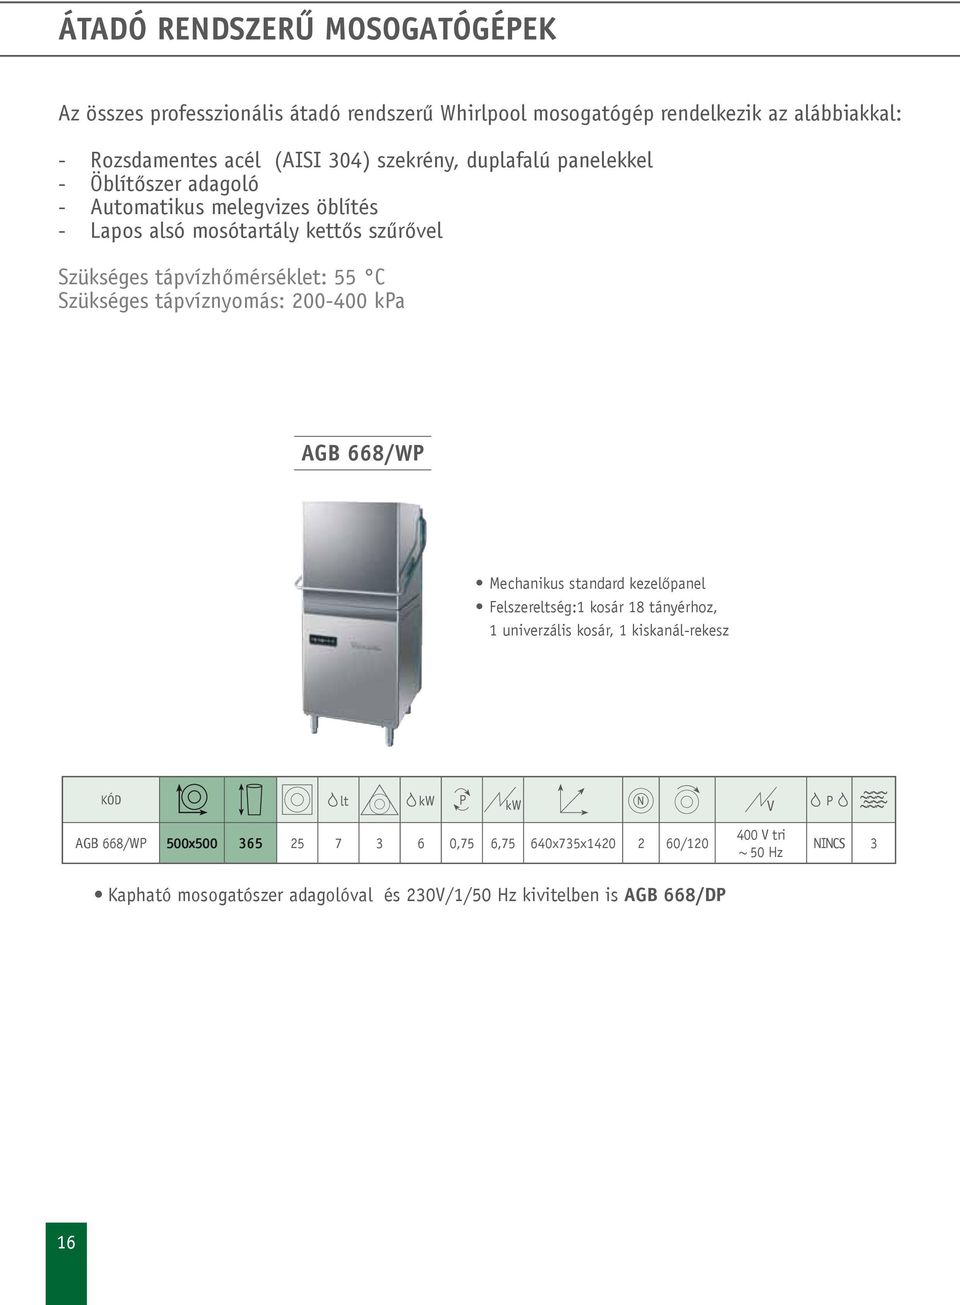 55 C Szükséges tápvíznyomás: 200-400 ka AGB 668/W Mechanikus standard kezelőpanel Felszereltség:1 kosár 18 tányérhoz, 1 univerzális kosár, 1